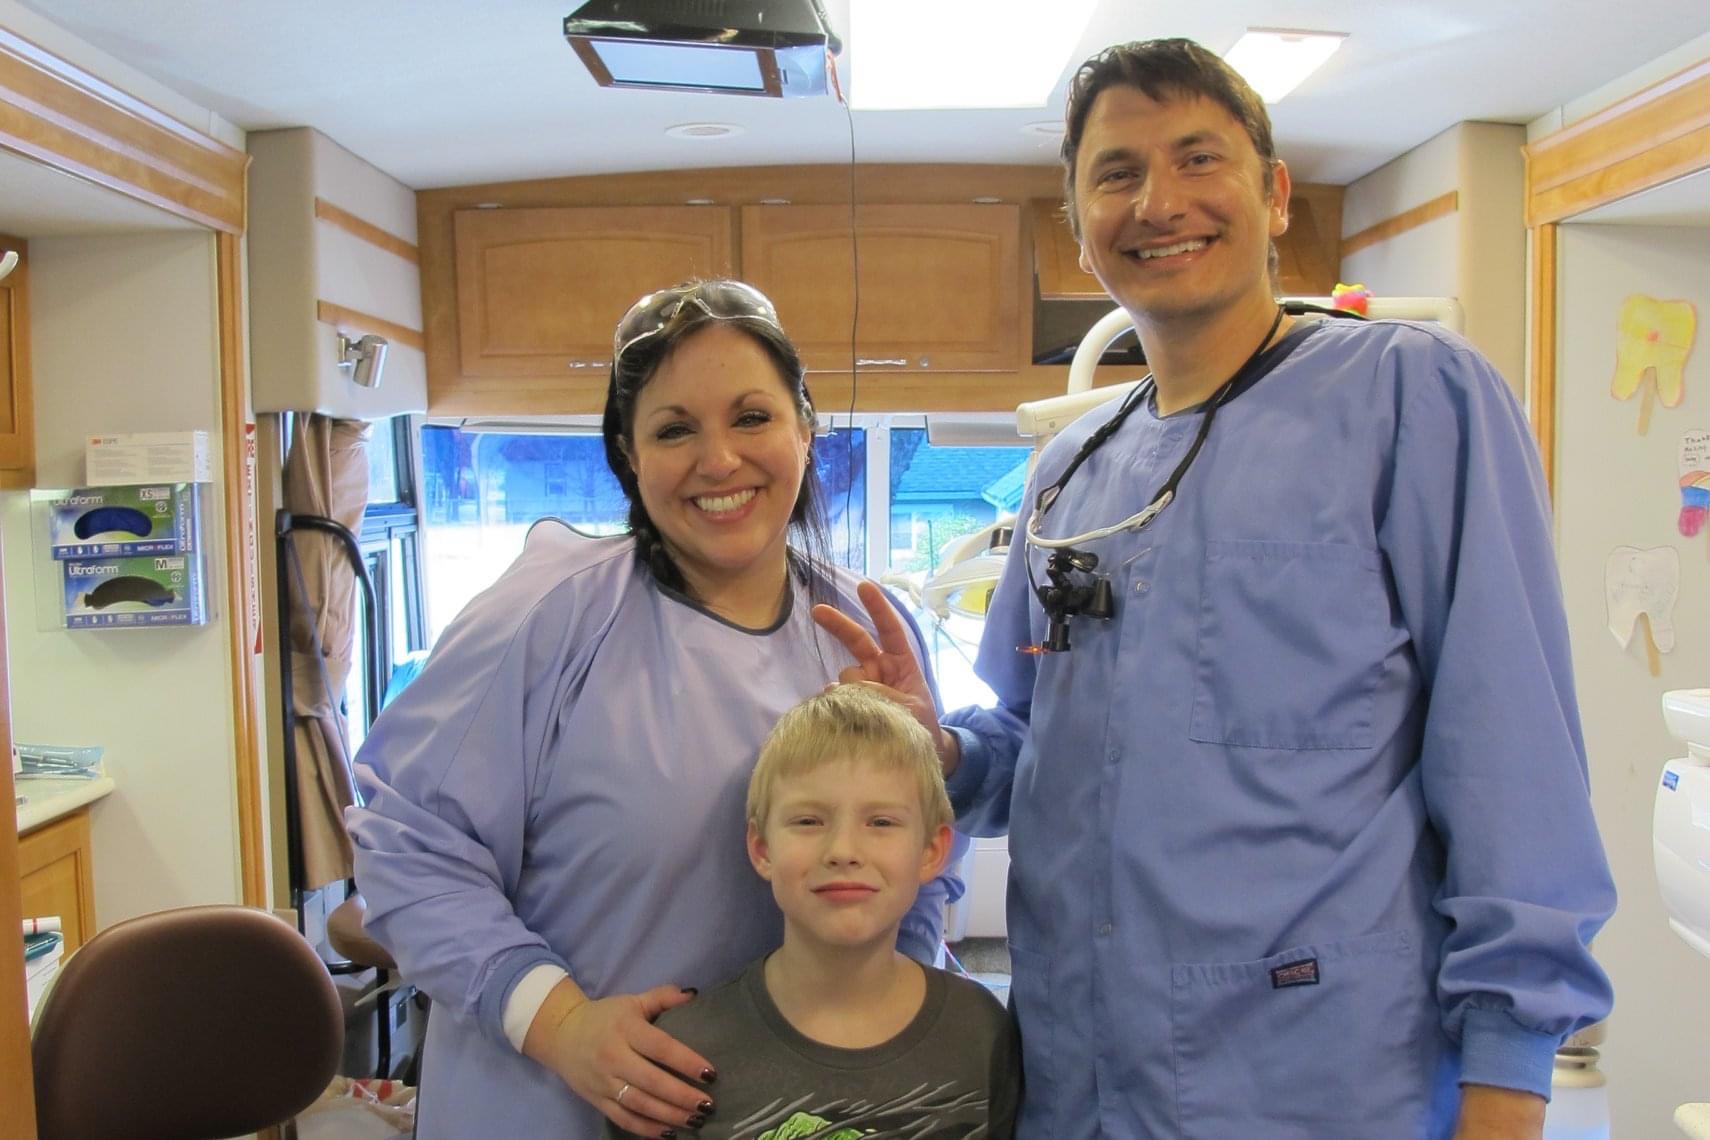 Doctor Paskalev team member and dental patient smiling together